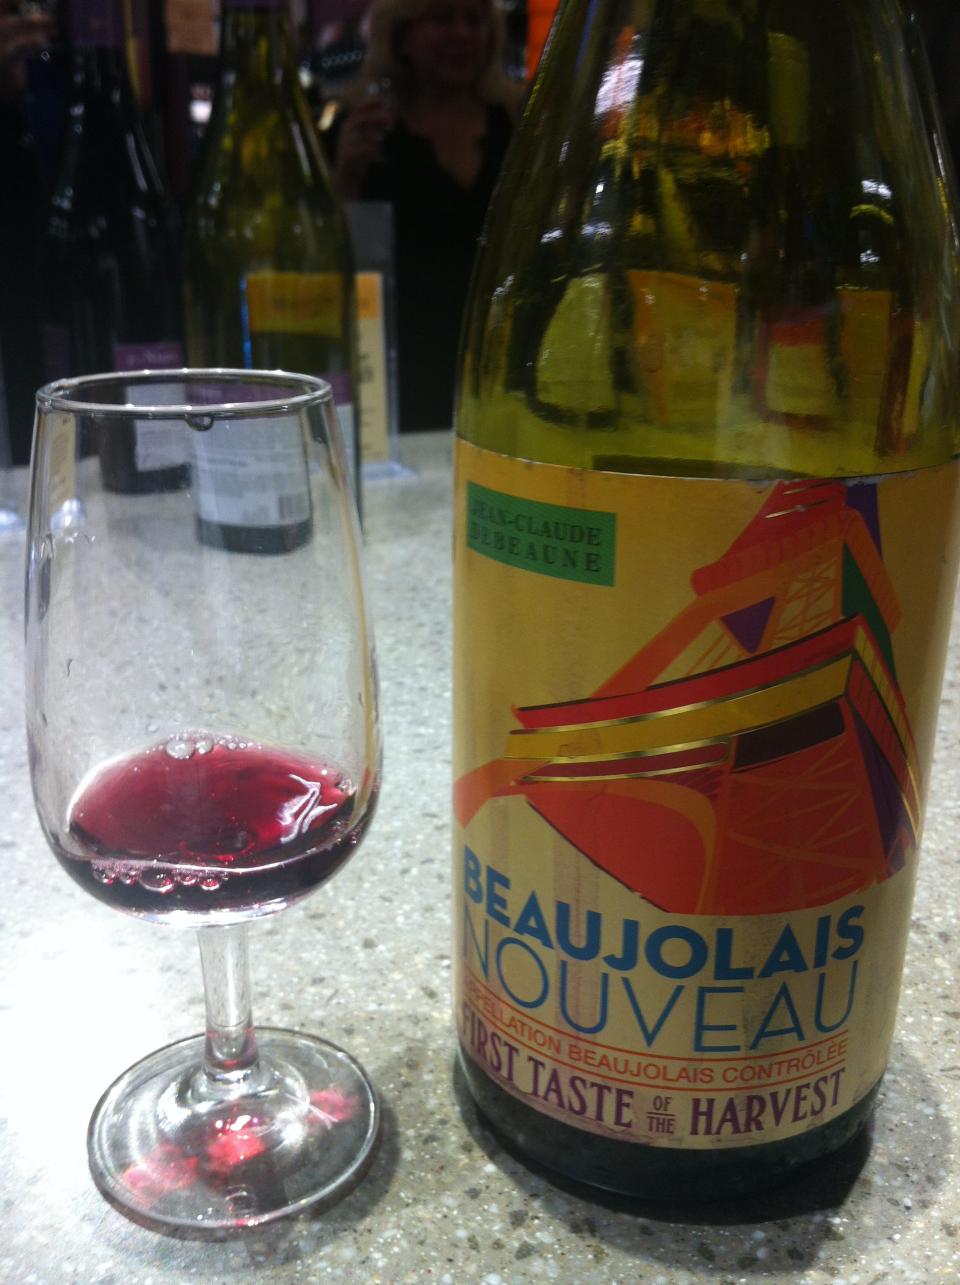 A bottle of Beaujolais Nouveau.